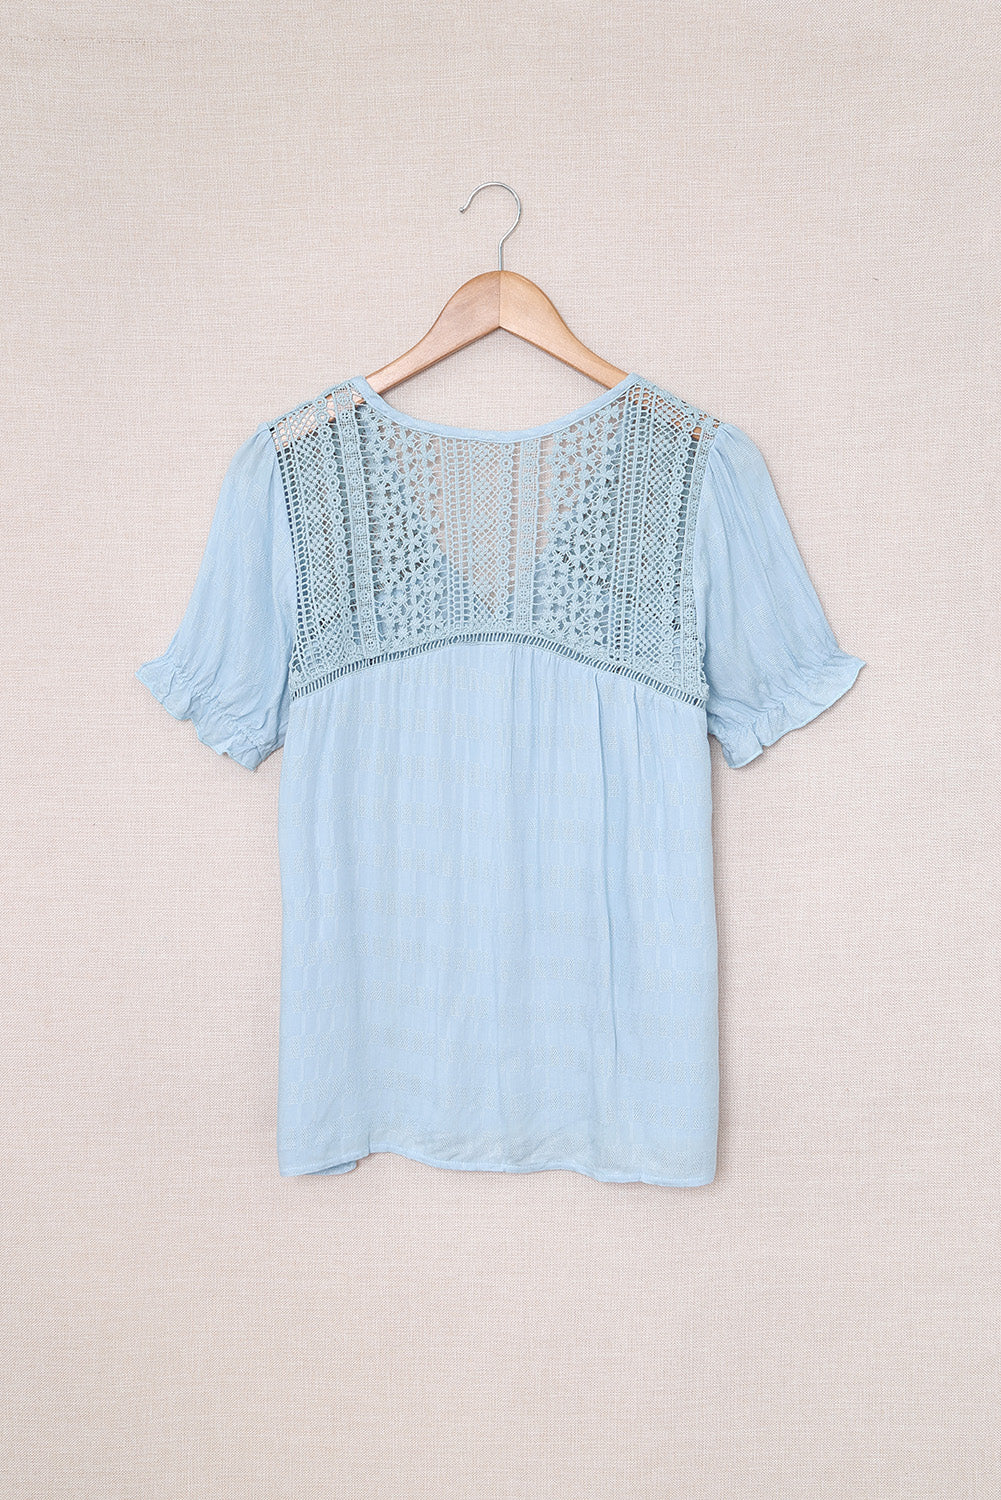 TEEK - Misty Blue Lace Button Up Short Sleeve Shirt TOPS TEEK Trend   